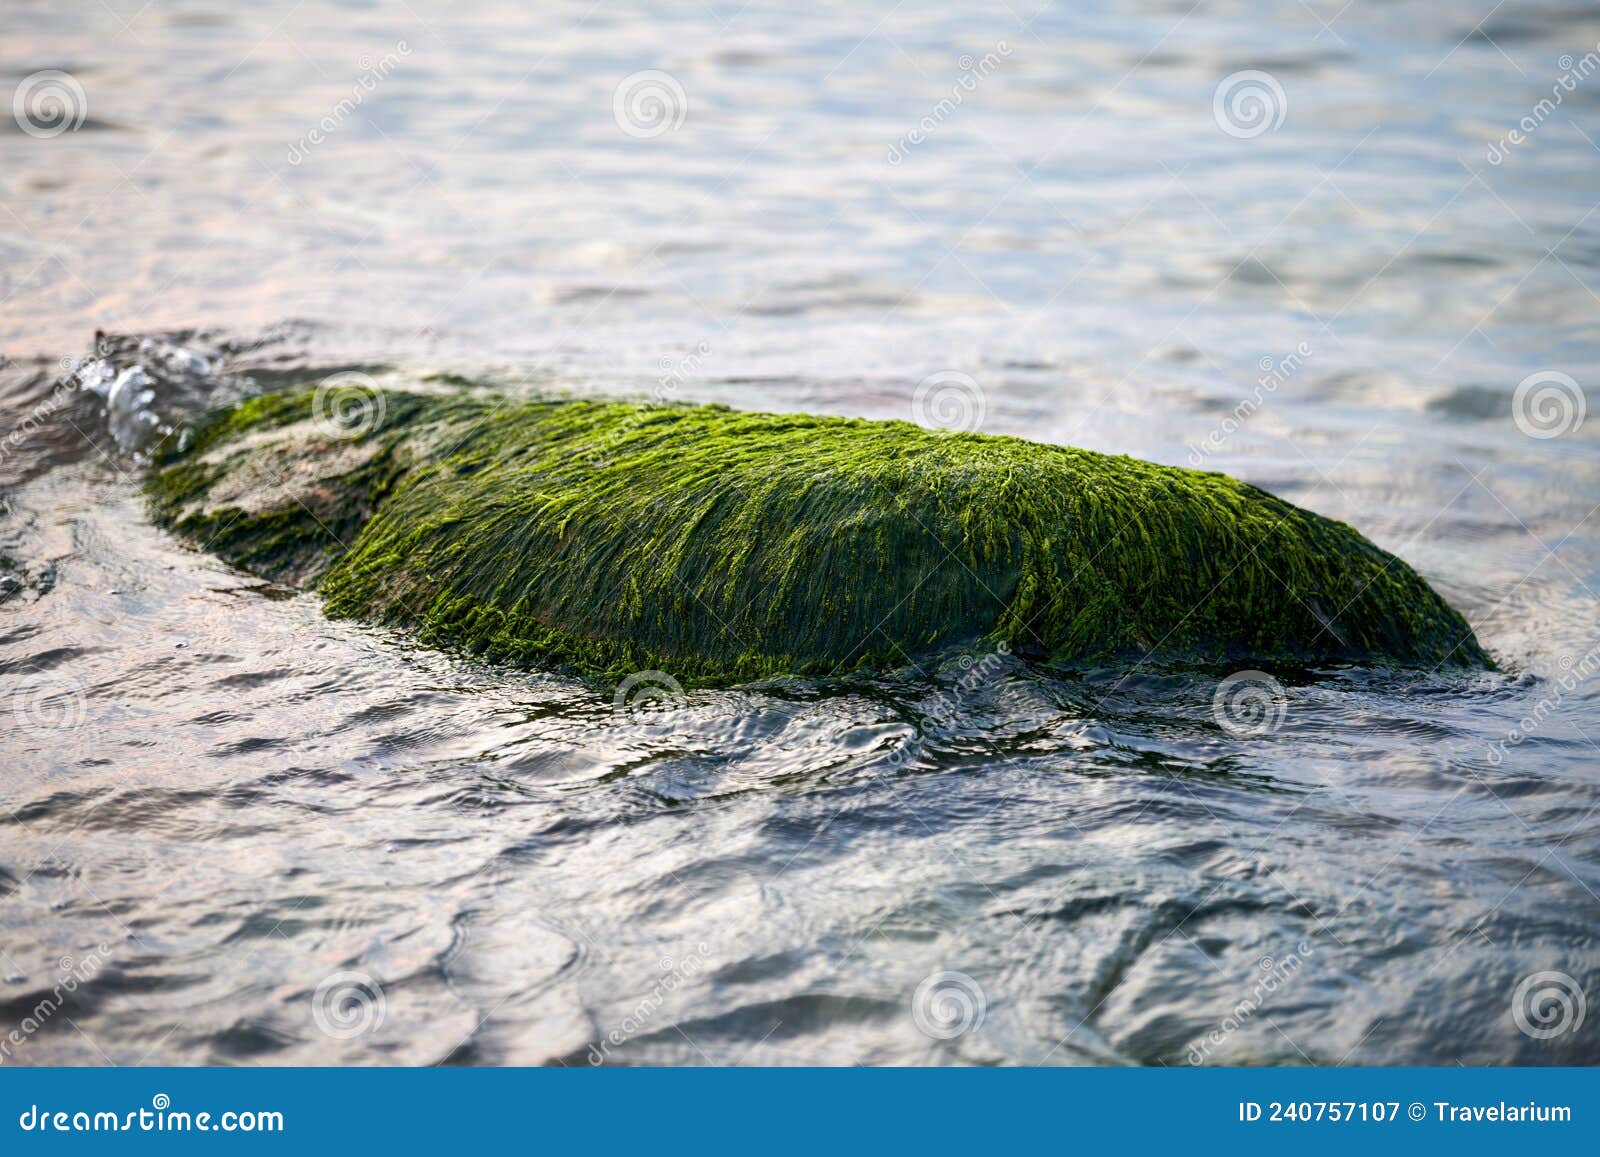 Algas Marinhas Verdes Cobertas De Pedra Na água Do Mar Belas Musas Do Mar  úmidas Se Aproximam Imagem de Stock - Imagem de flora, algas: 240757107